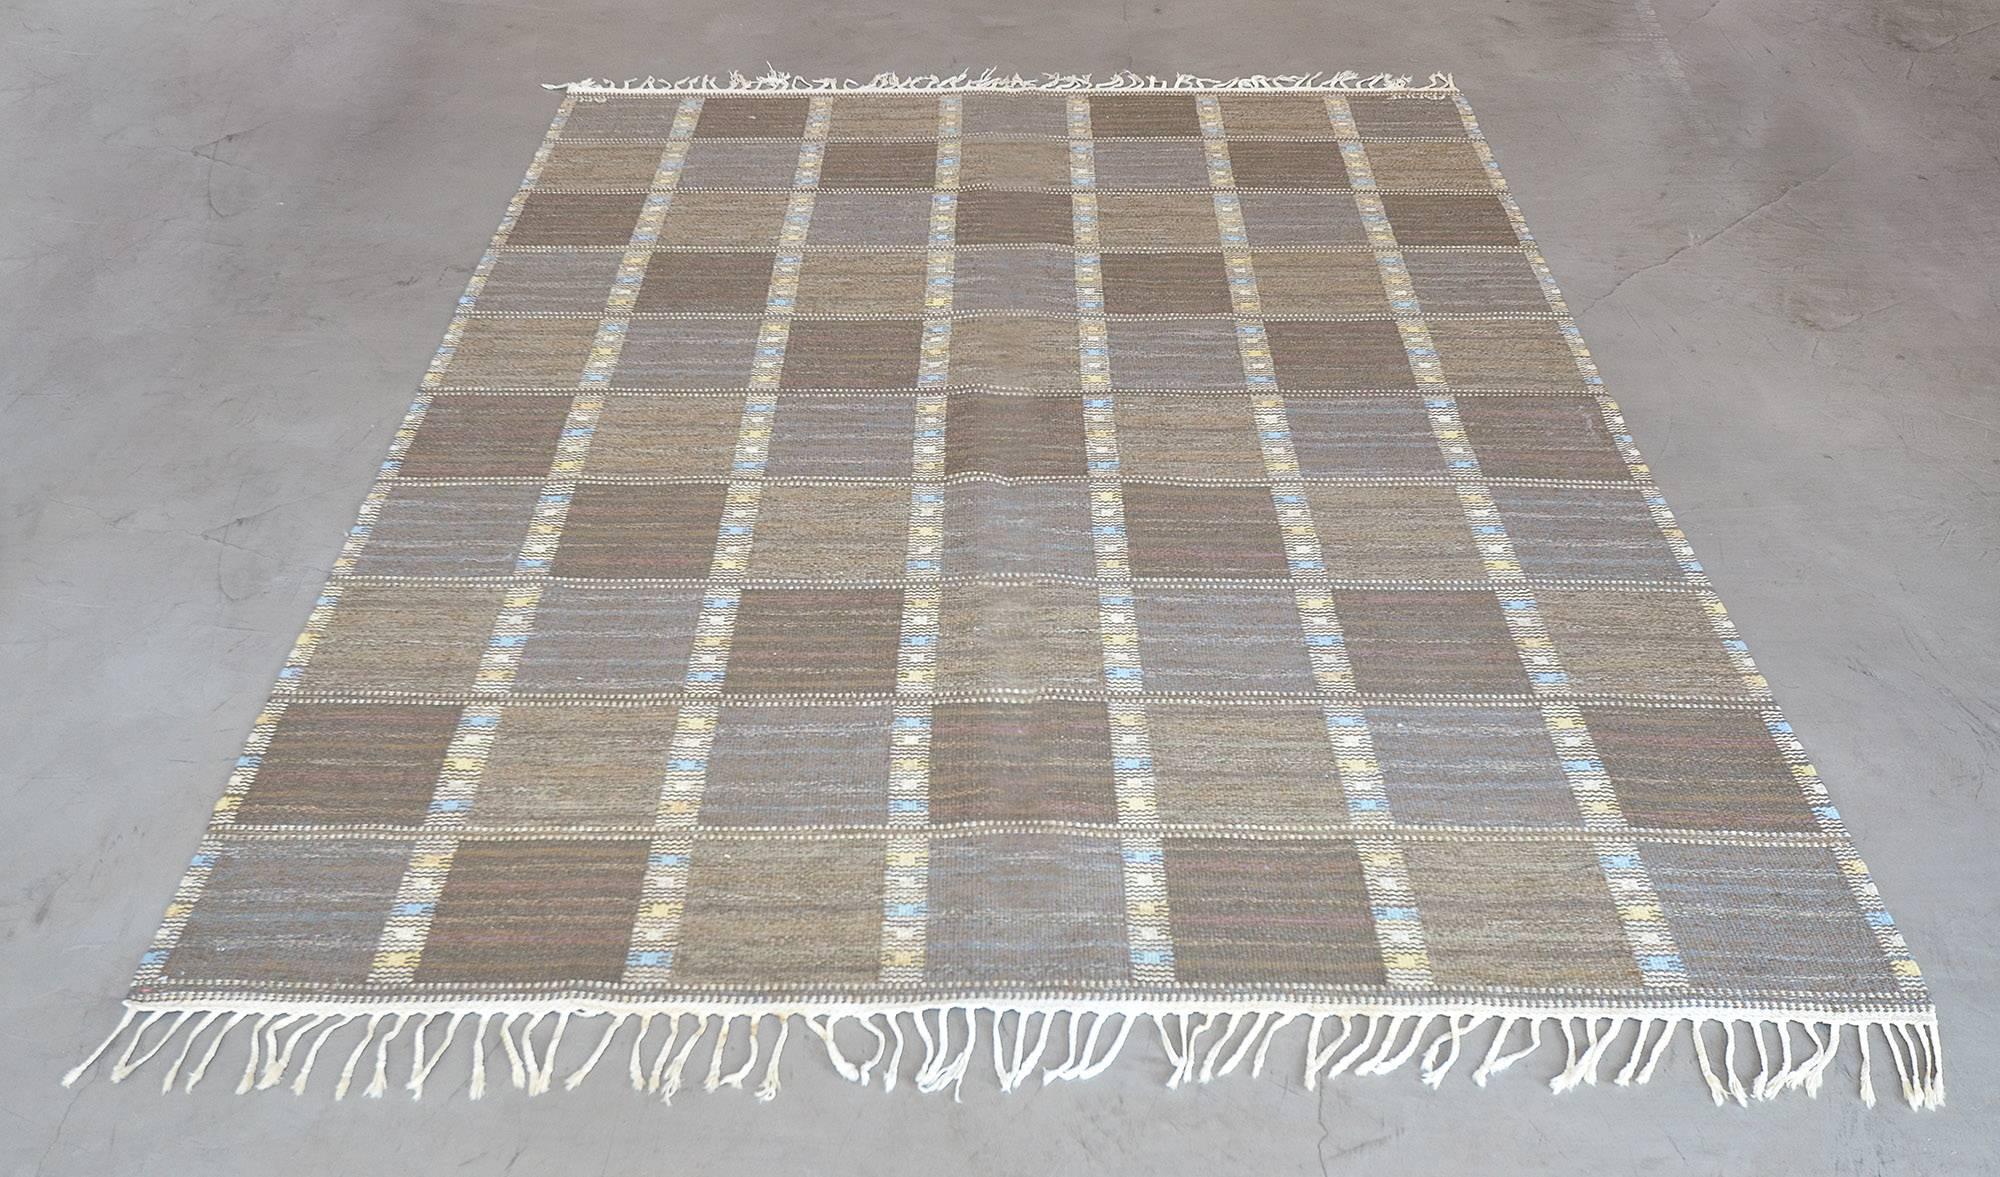 Ce tapis suédois vintage tissé à la main présente un champ à carreaux composé de rangées diagonales taupe ton sur ton, séparées par des rayures tribales. Signé par l'artiste original et l'atelier.

À propos du maître tisseur :
Le paradigme